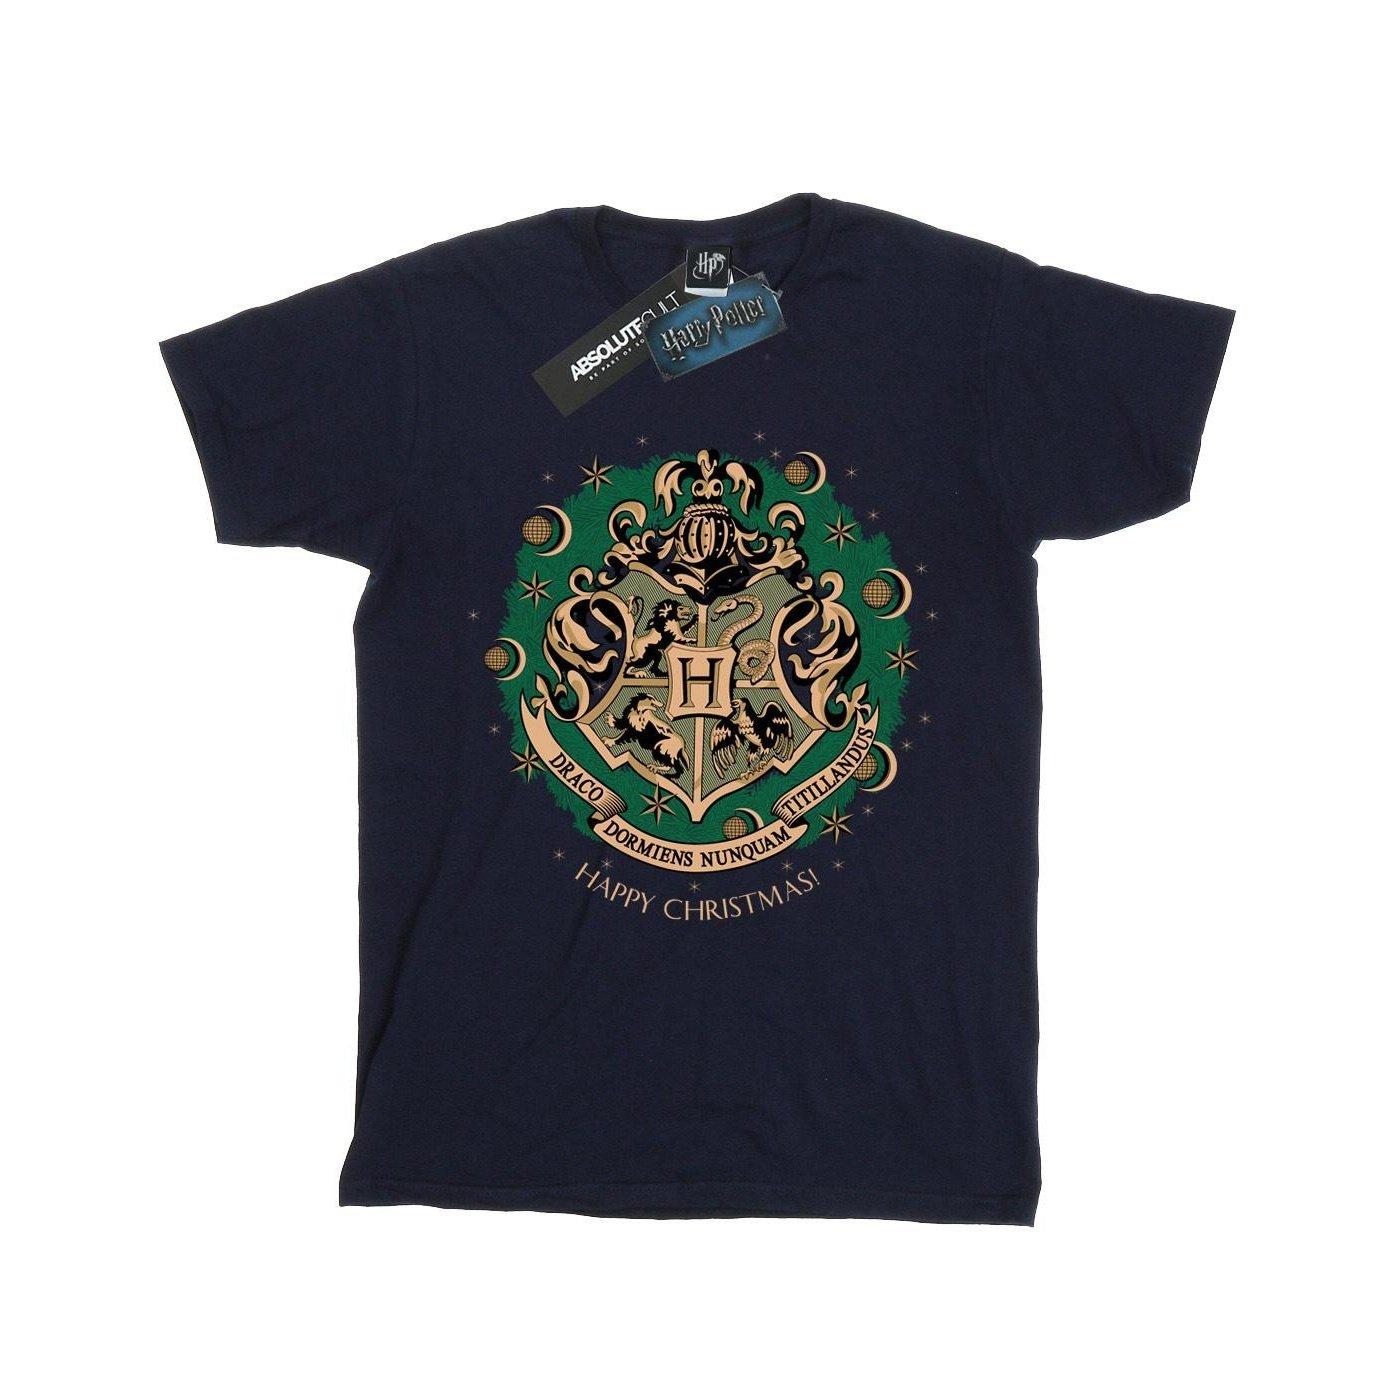 Tshirt Weihnachtliches Design Unisex Marine 152-158 von Harry Potter